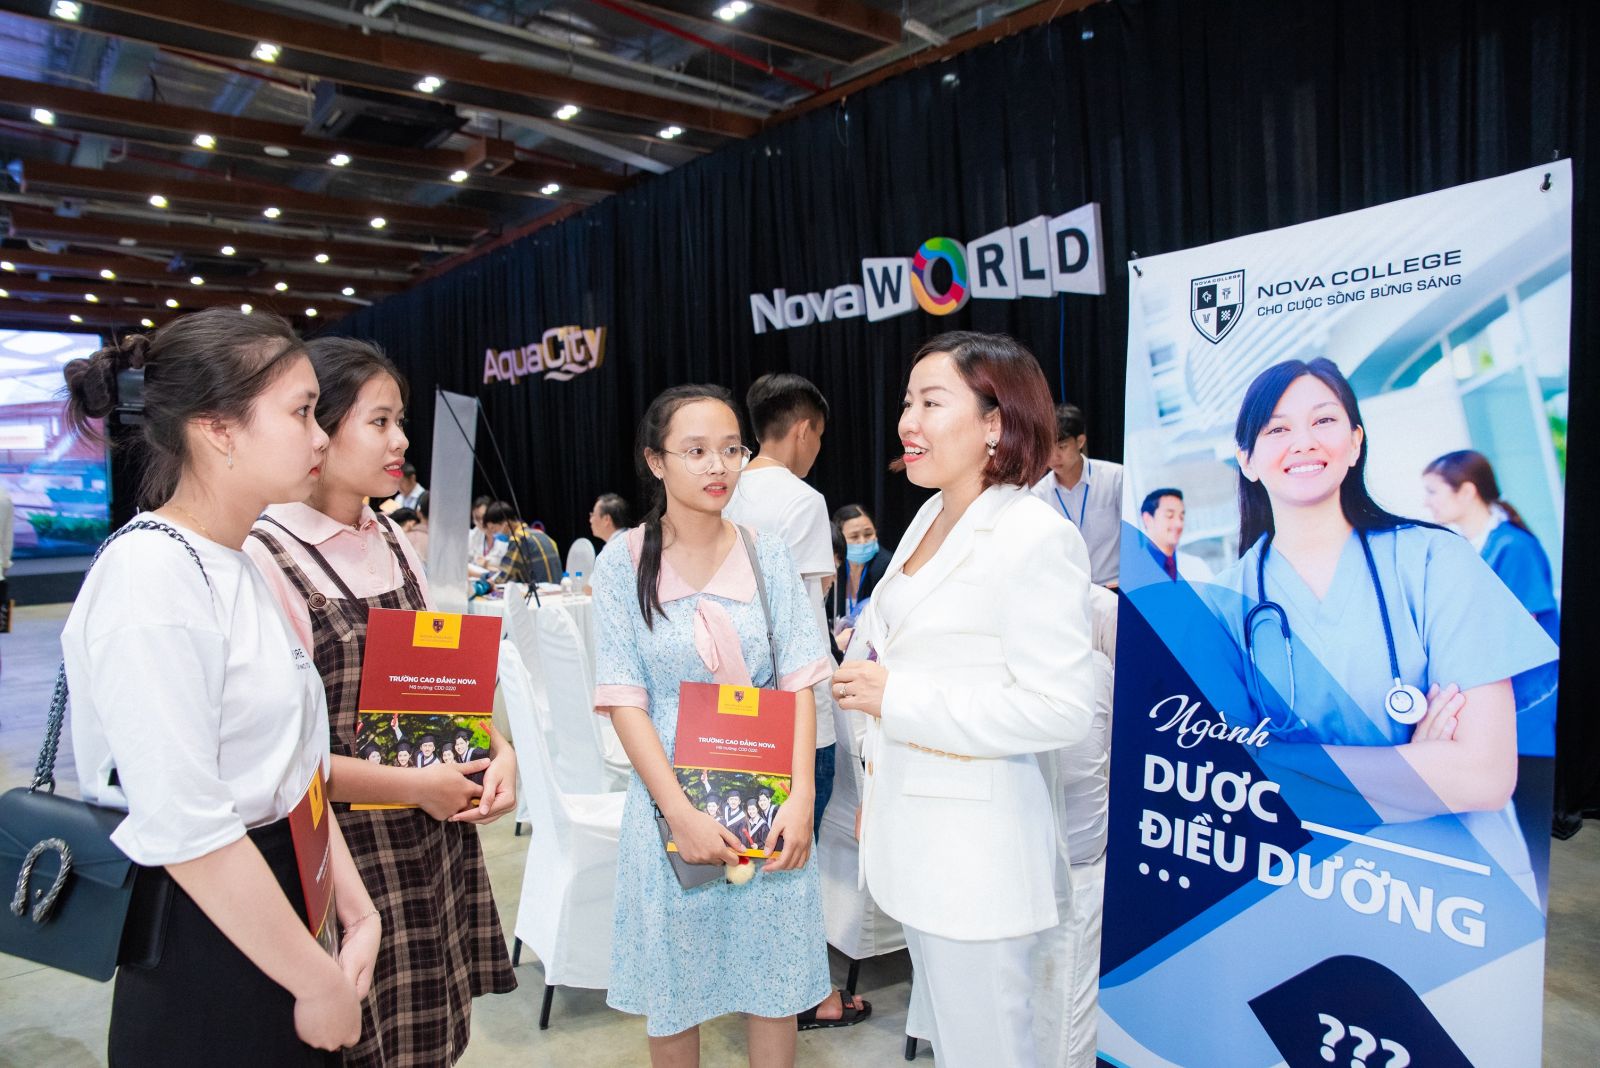 Hiệu trưởng Nova College Nguyễn Thị Ngọc Quyên đang giới thiệu về ngành Điều dưỡng cho các em học sinh